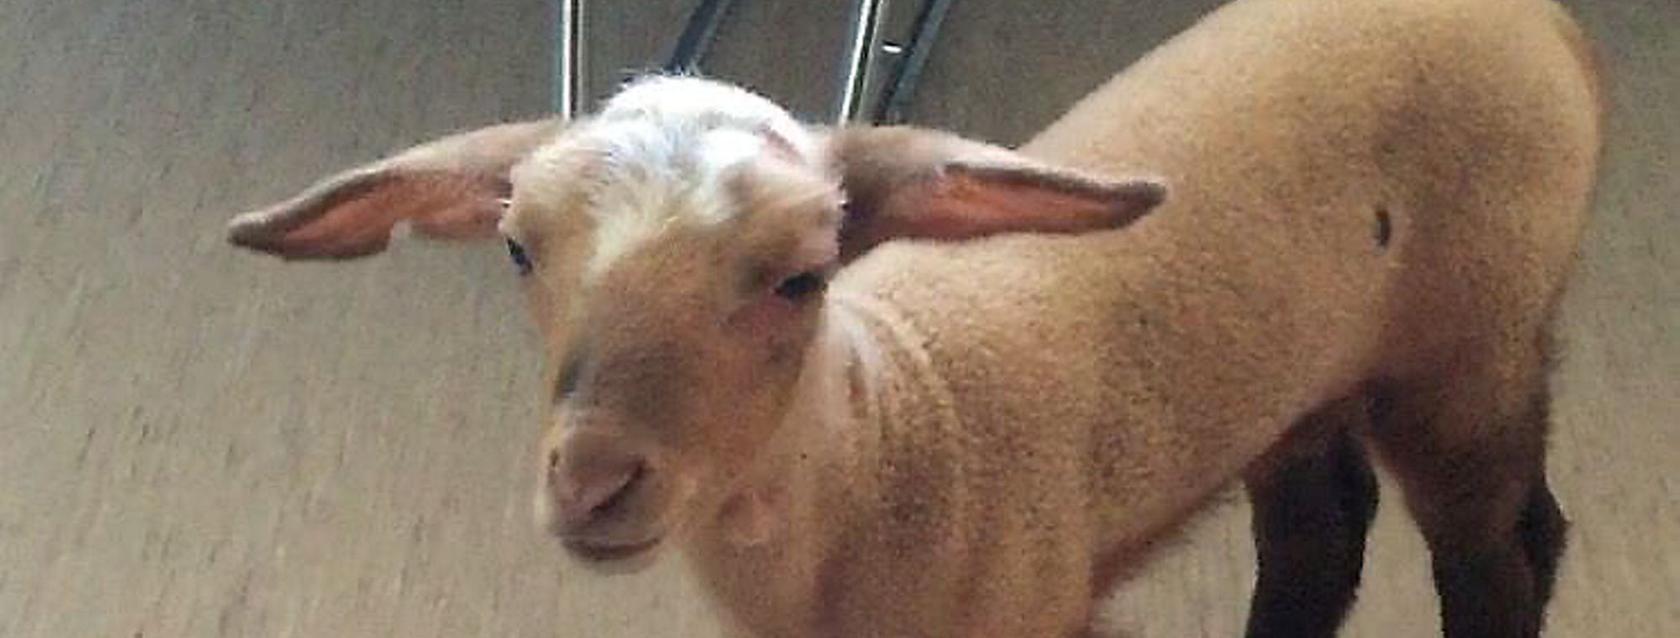 Das Lamm "Rosi" hat eine lange Odysee hinter sich: Nach einigen Tagen in einem Münchner Bordell befreite die Polizei das Tier. Nun steht fest: Das junge Schaf stammt aus dem Nürnberger Tiergarten.